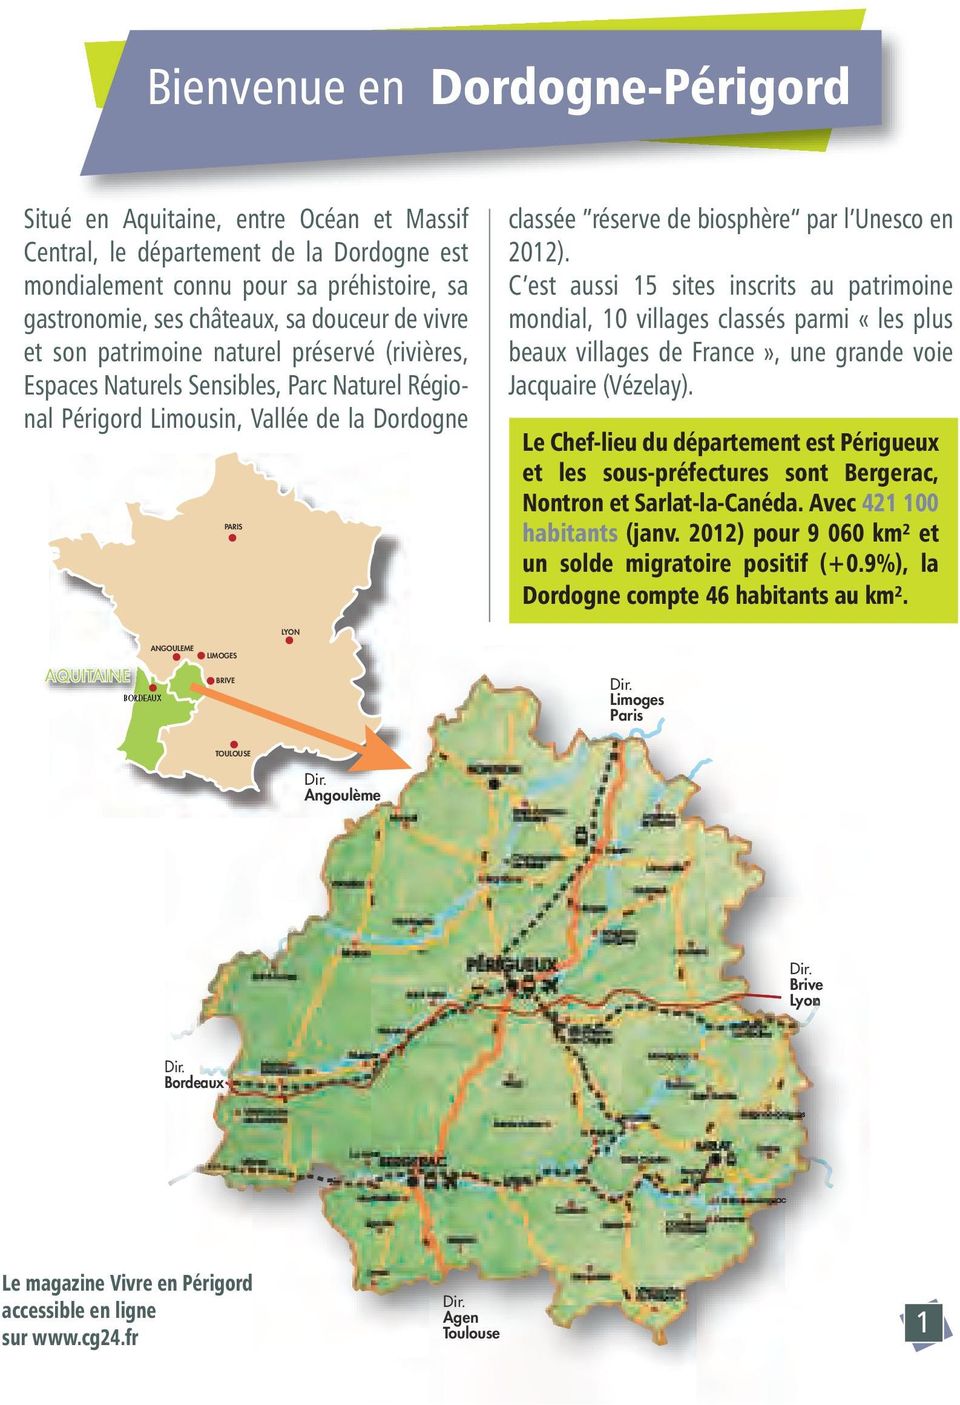 2012). C est aussi 15 sites inscrits au patrimoine mondial, 10 villages classés parmi «les plus beaux villages de France», une grande voie Jacquaire (Vézelay).